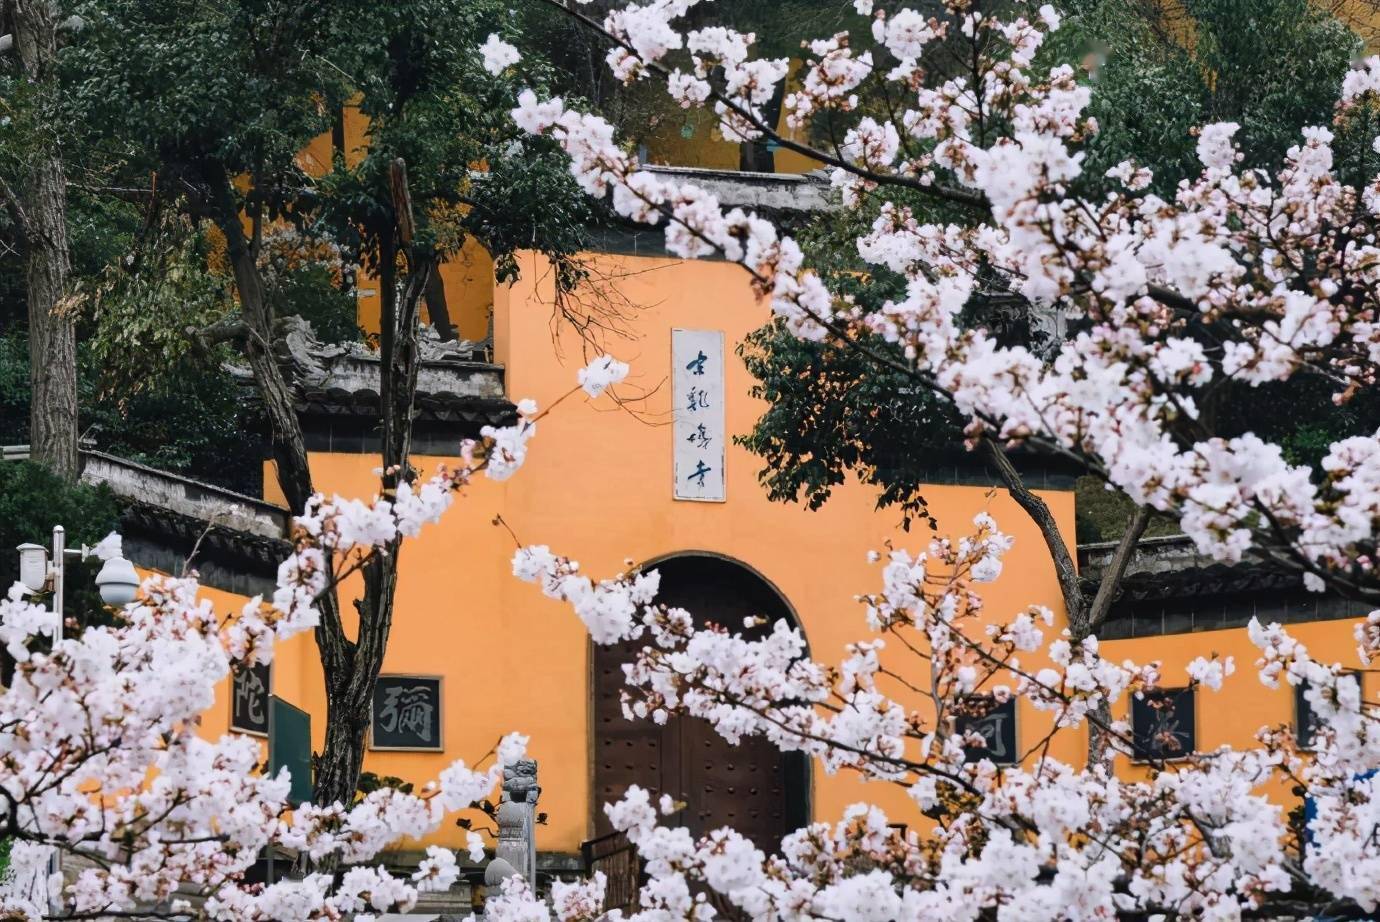 春天的南京鸡鸣寺,青瓦黄墙映衬着娇嫩的樱花,让这里